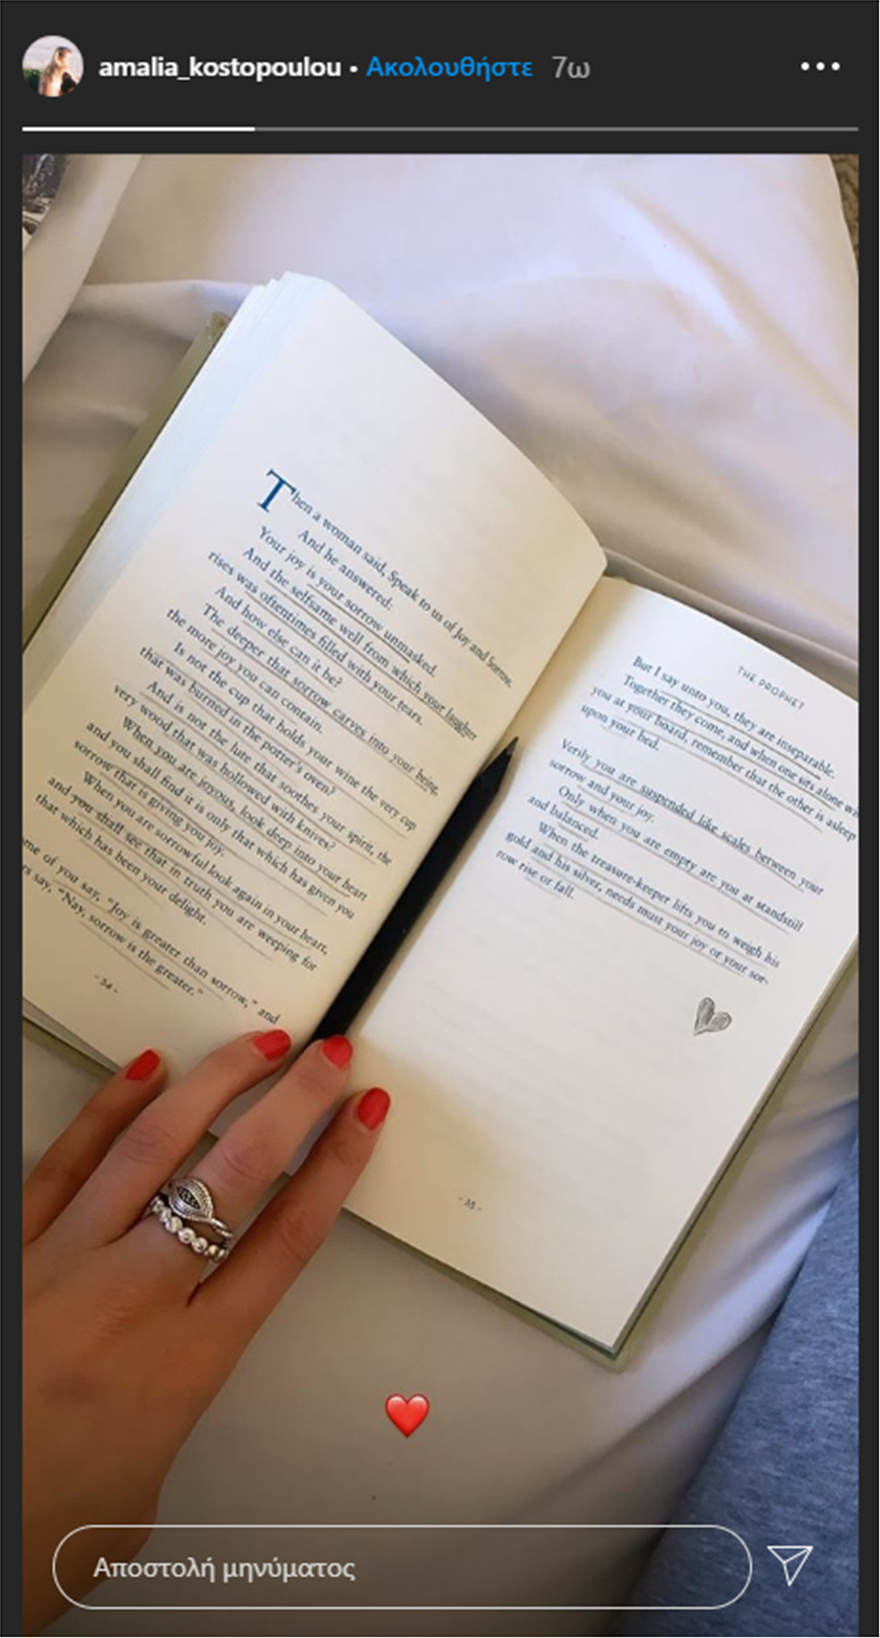 Amalia_Kostopoulou-Reading_Book